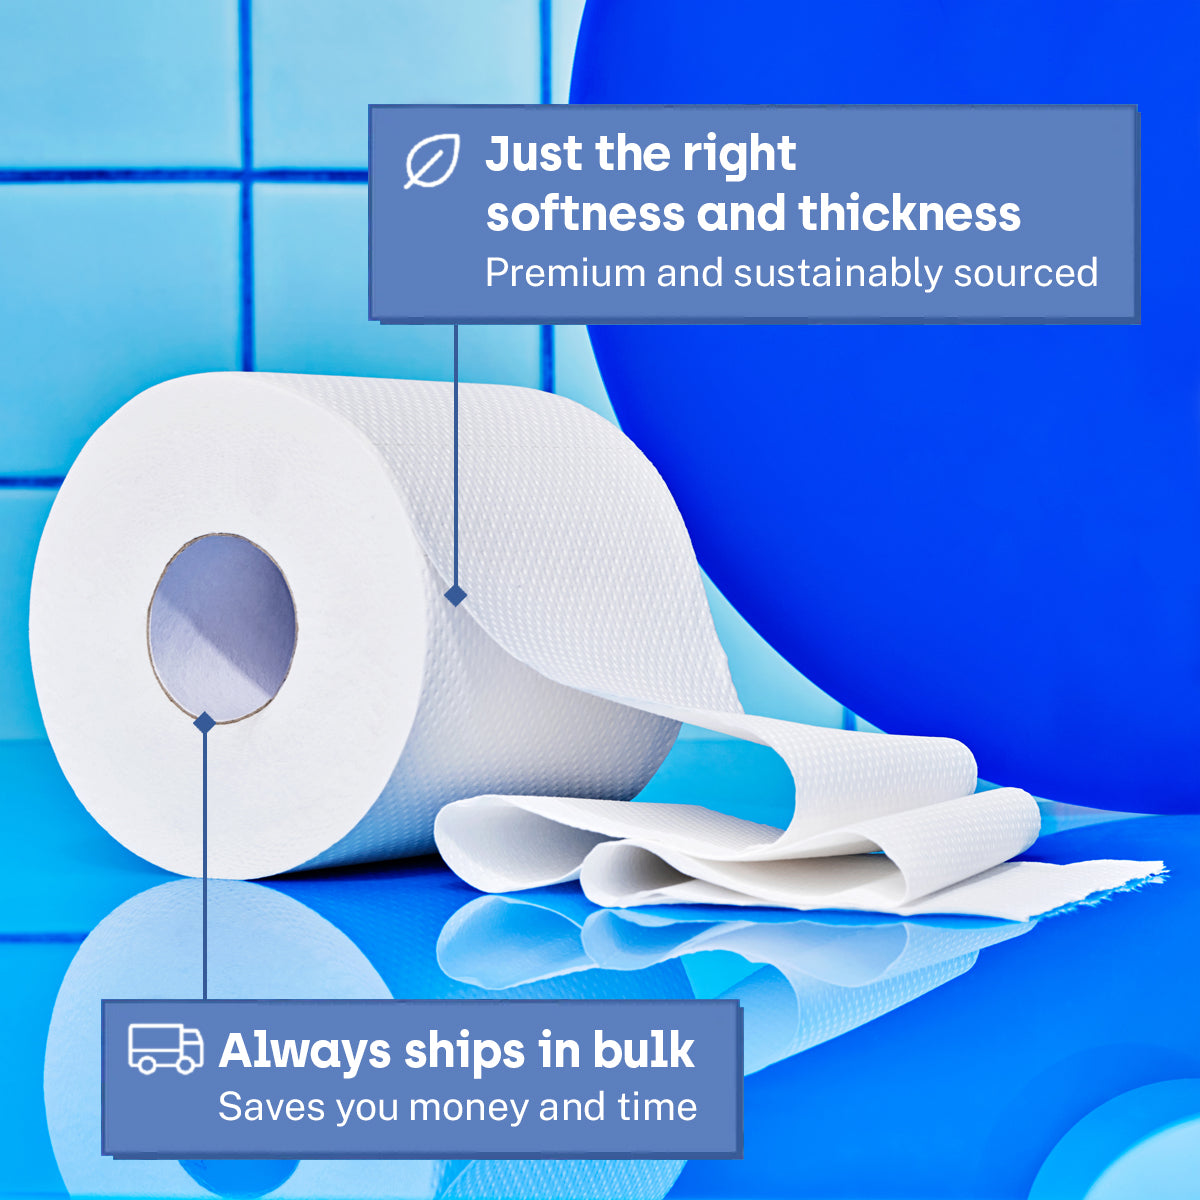 40% Off! 47 Rolls of Premium Toilet Paper